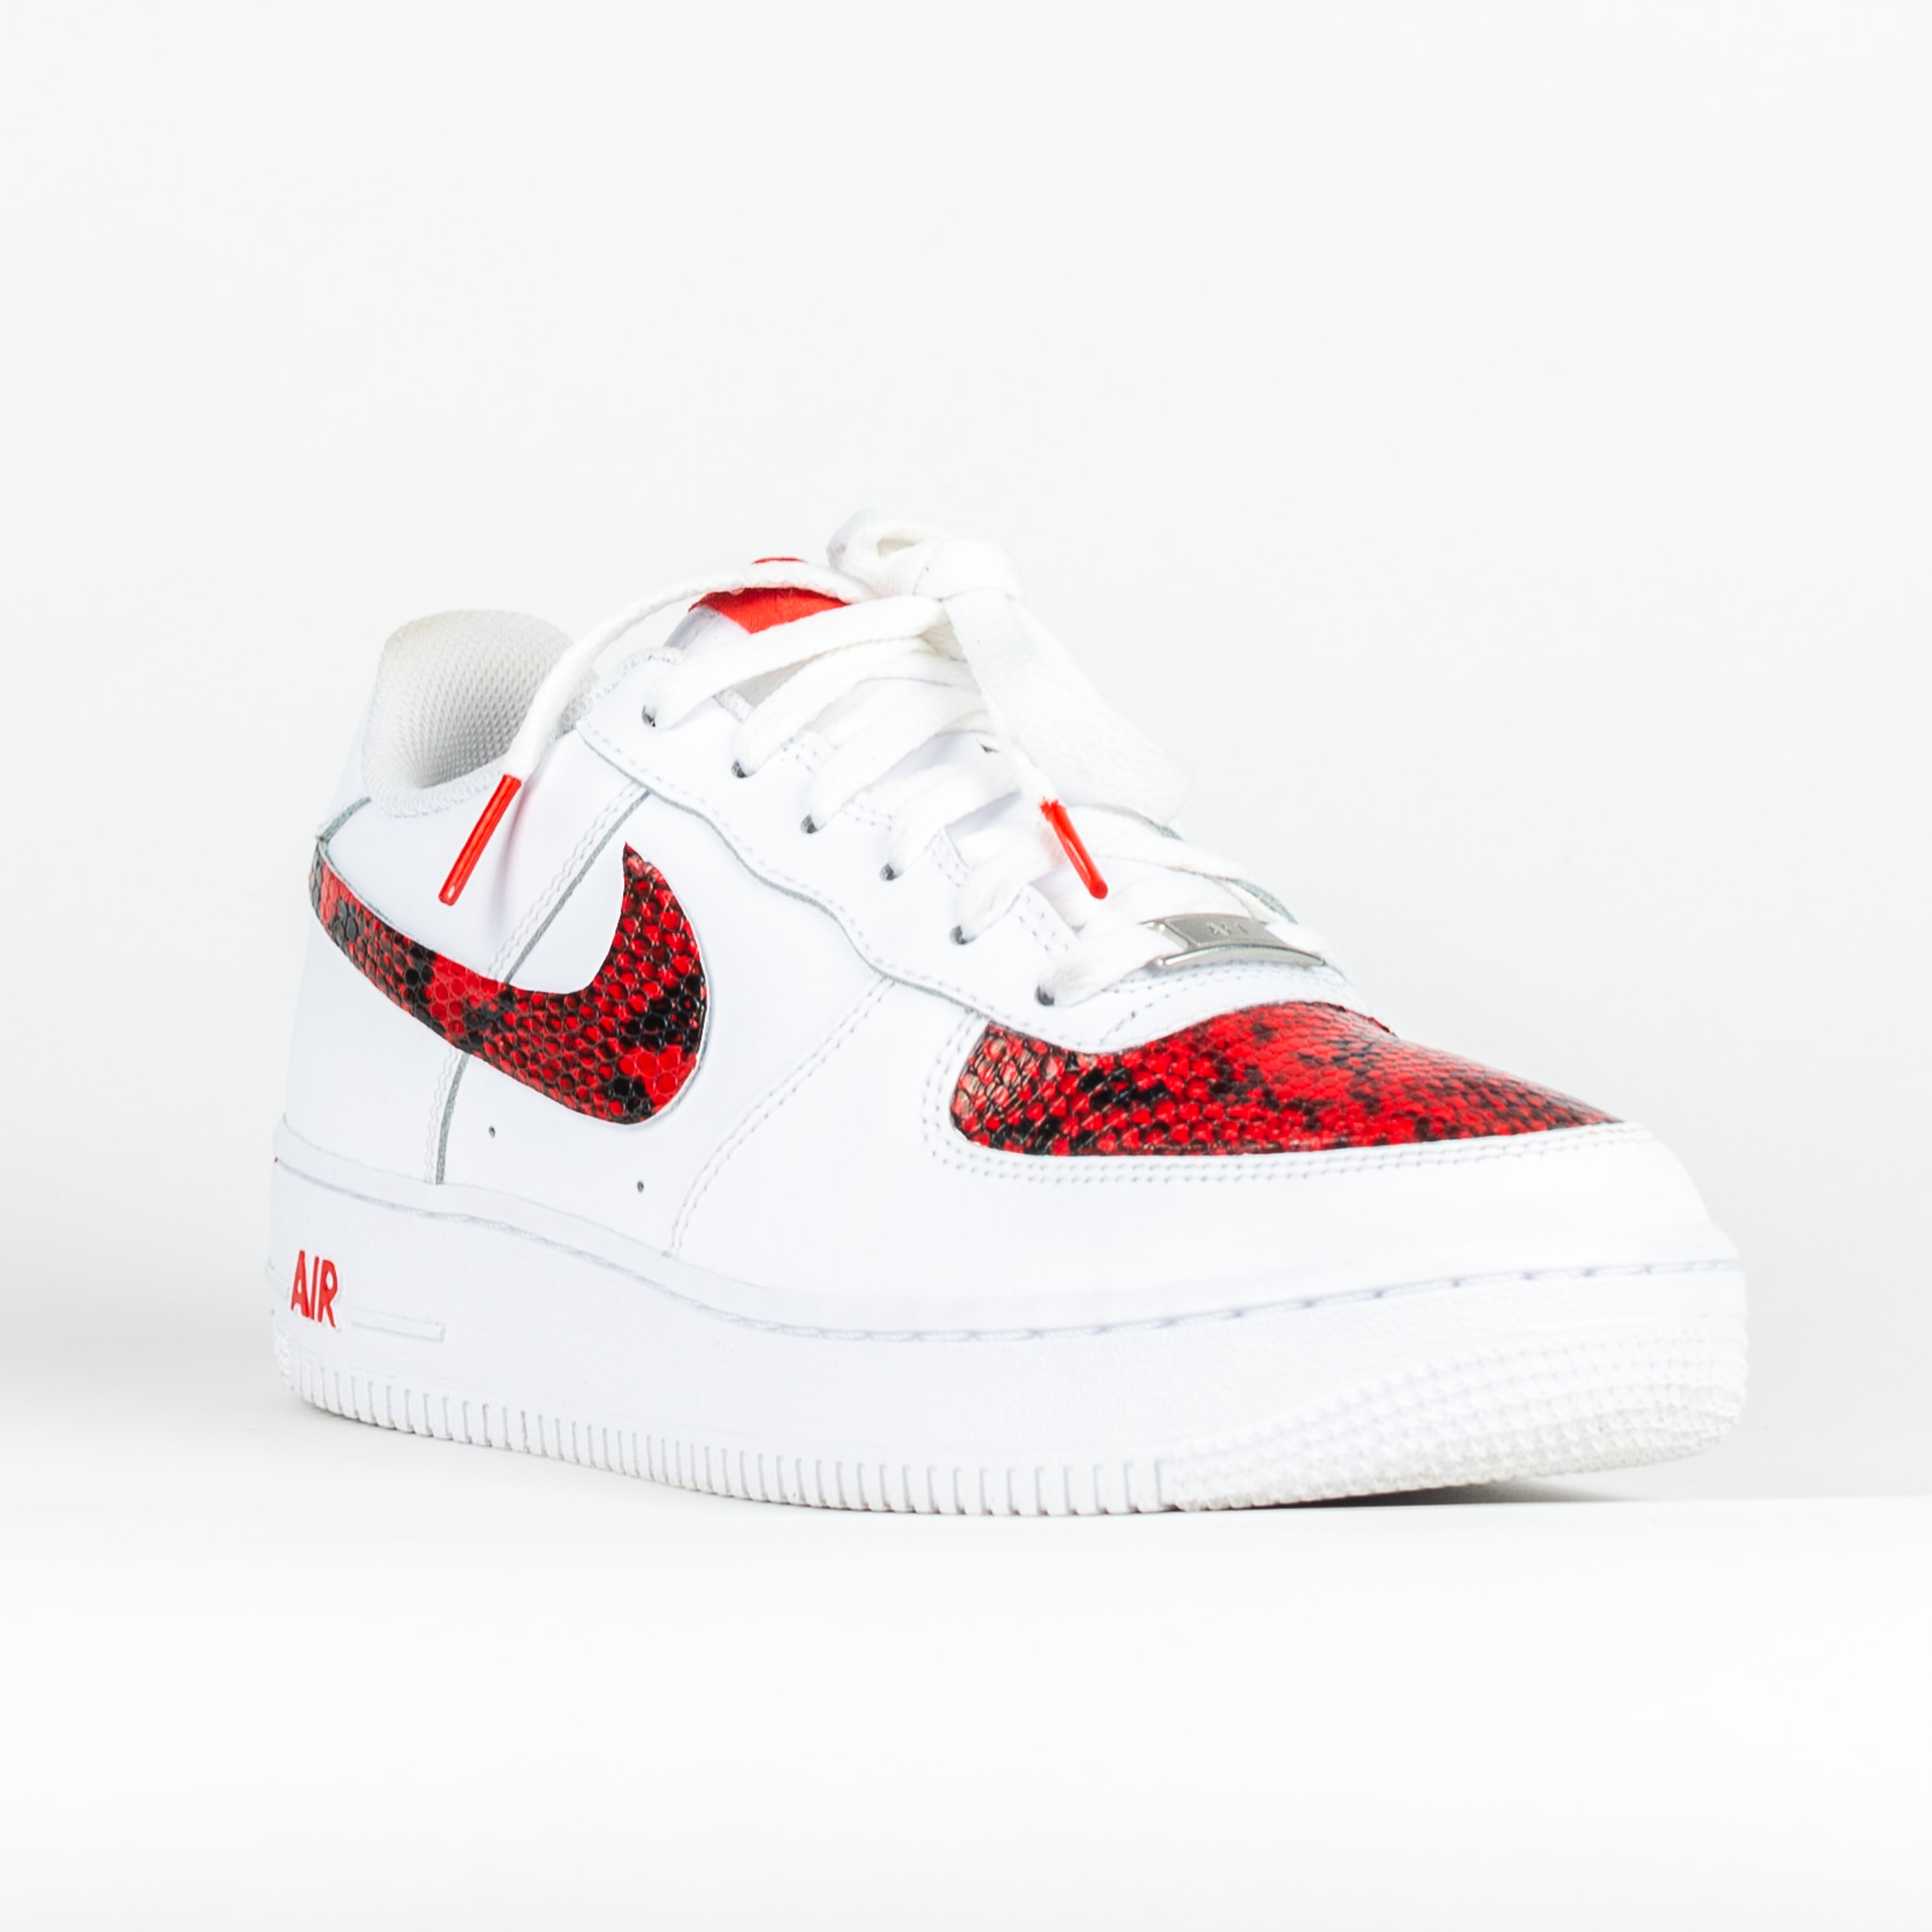 Air Force 1 Shadow x Red Snake Skin, Custom Nike Sneakers